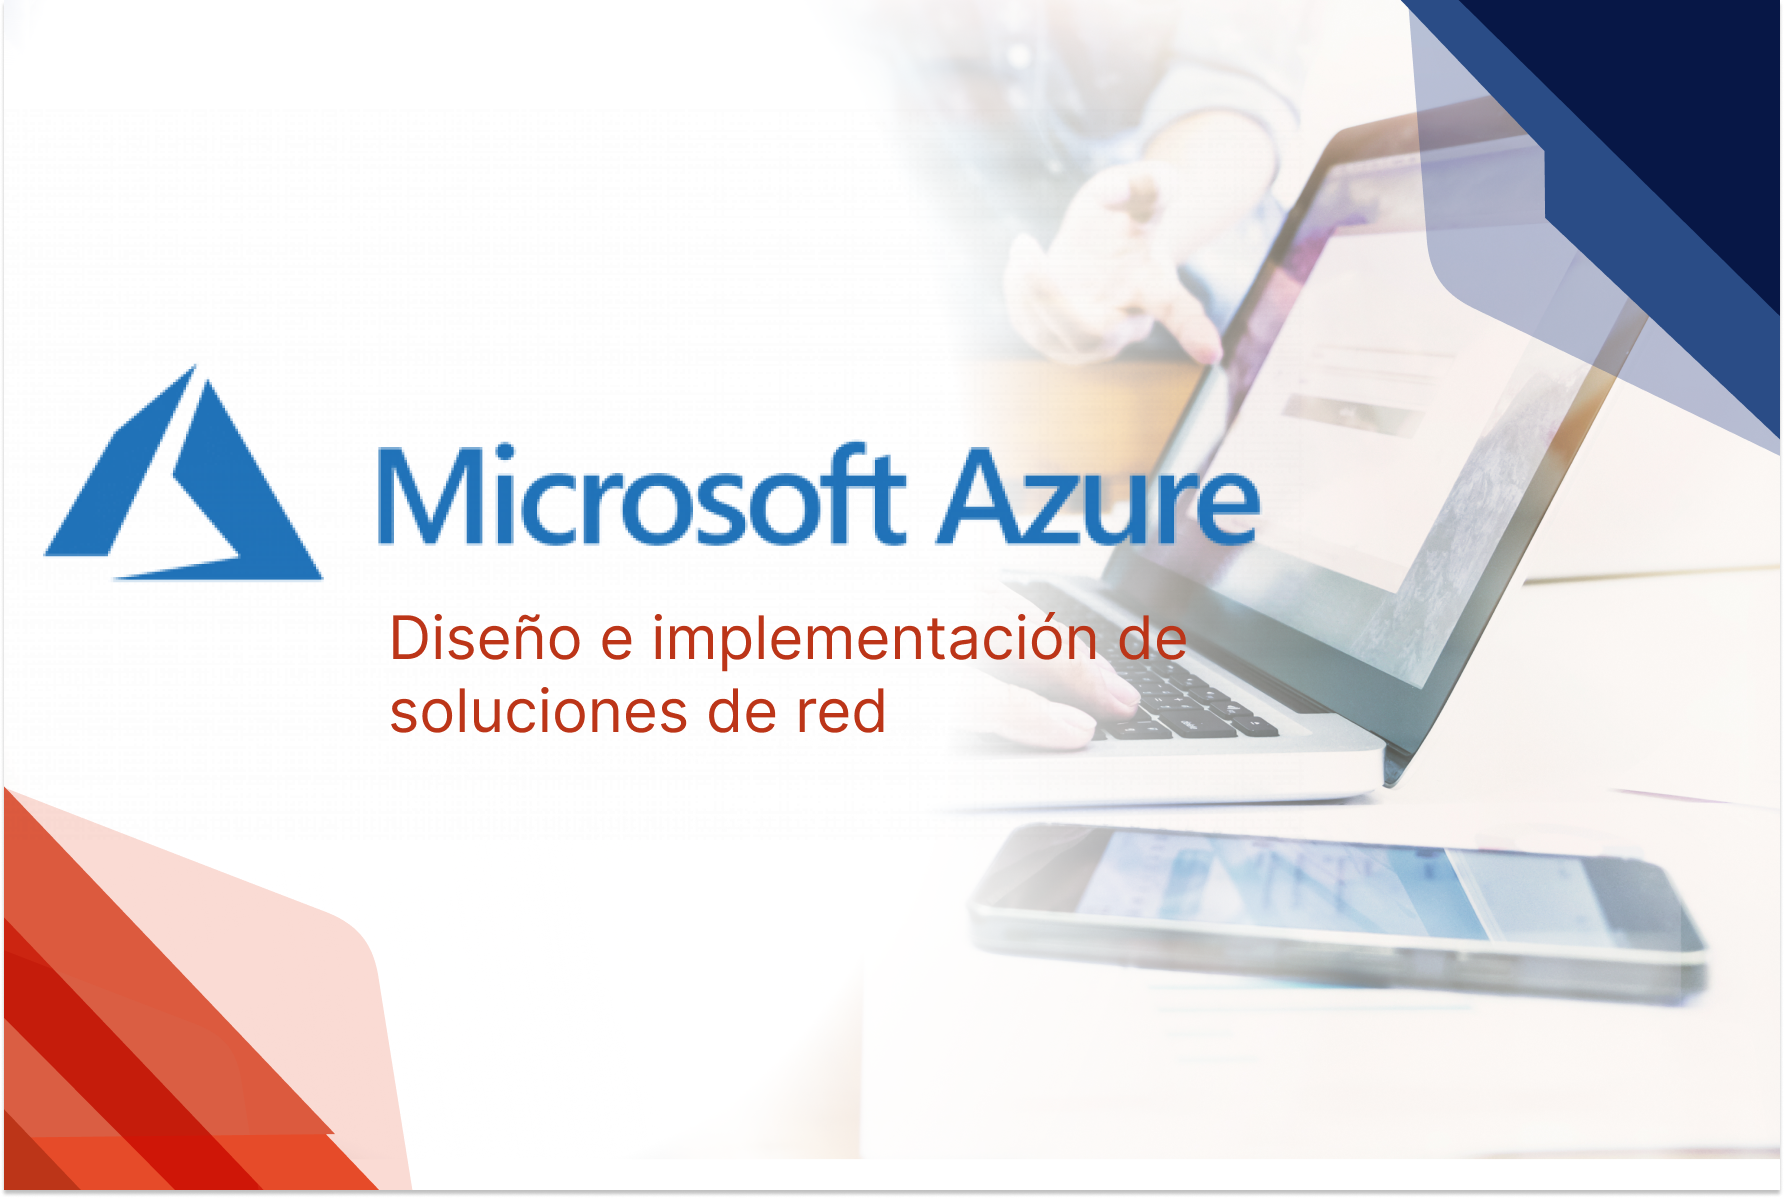 Diseño e implementación de soluciones de red de Microsoft Azure